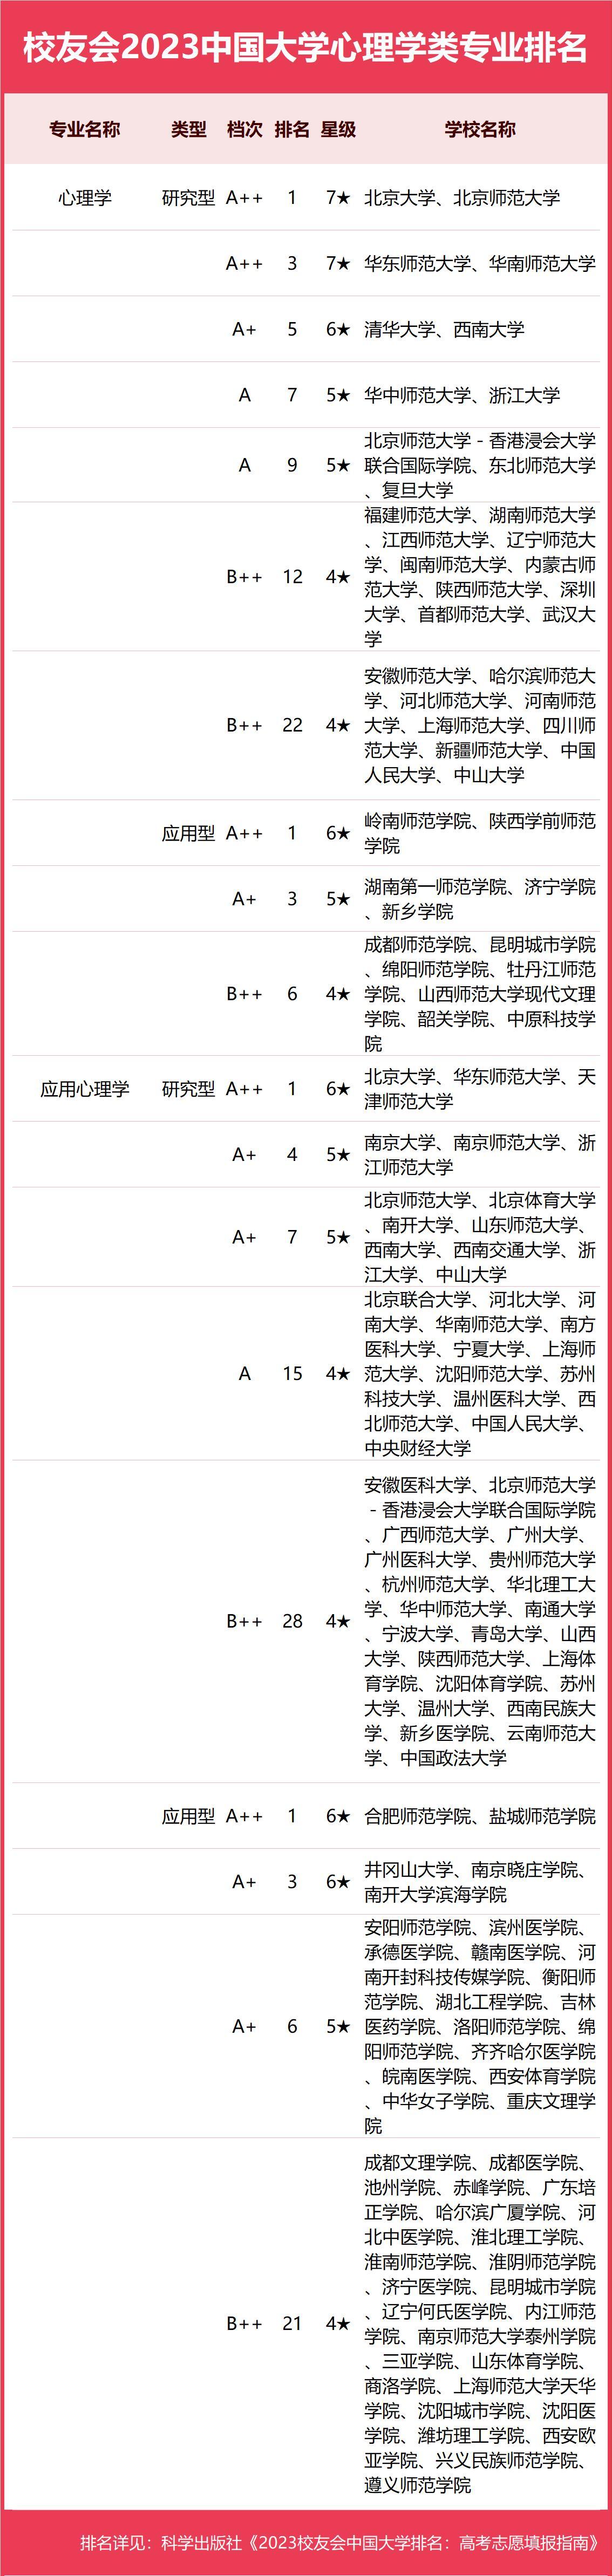 心理专业院校排名-2023中国大学心理学类专业排名